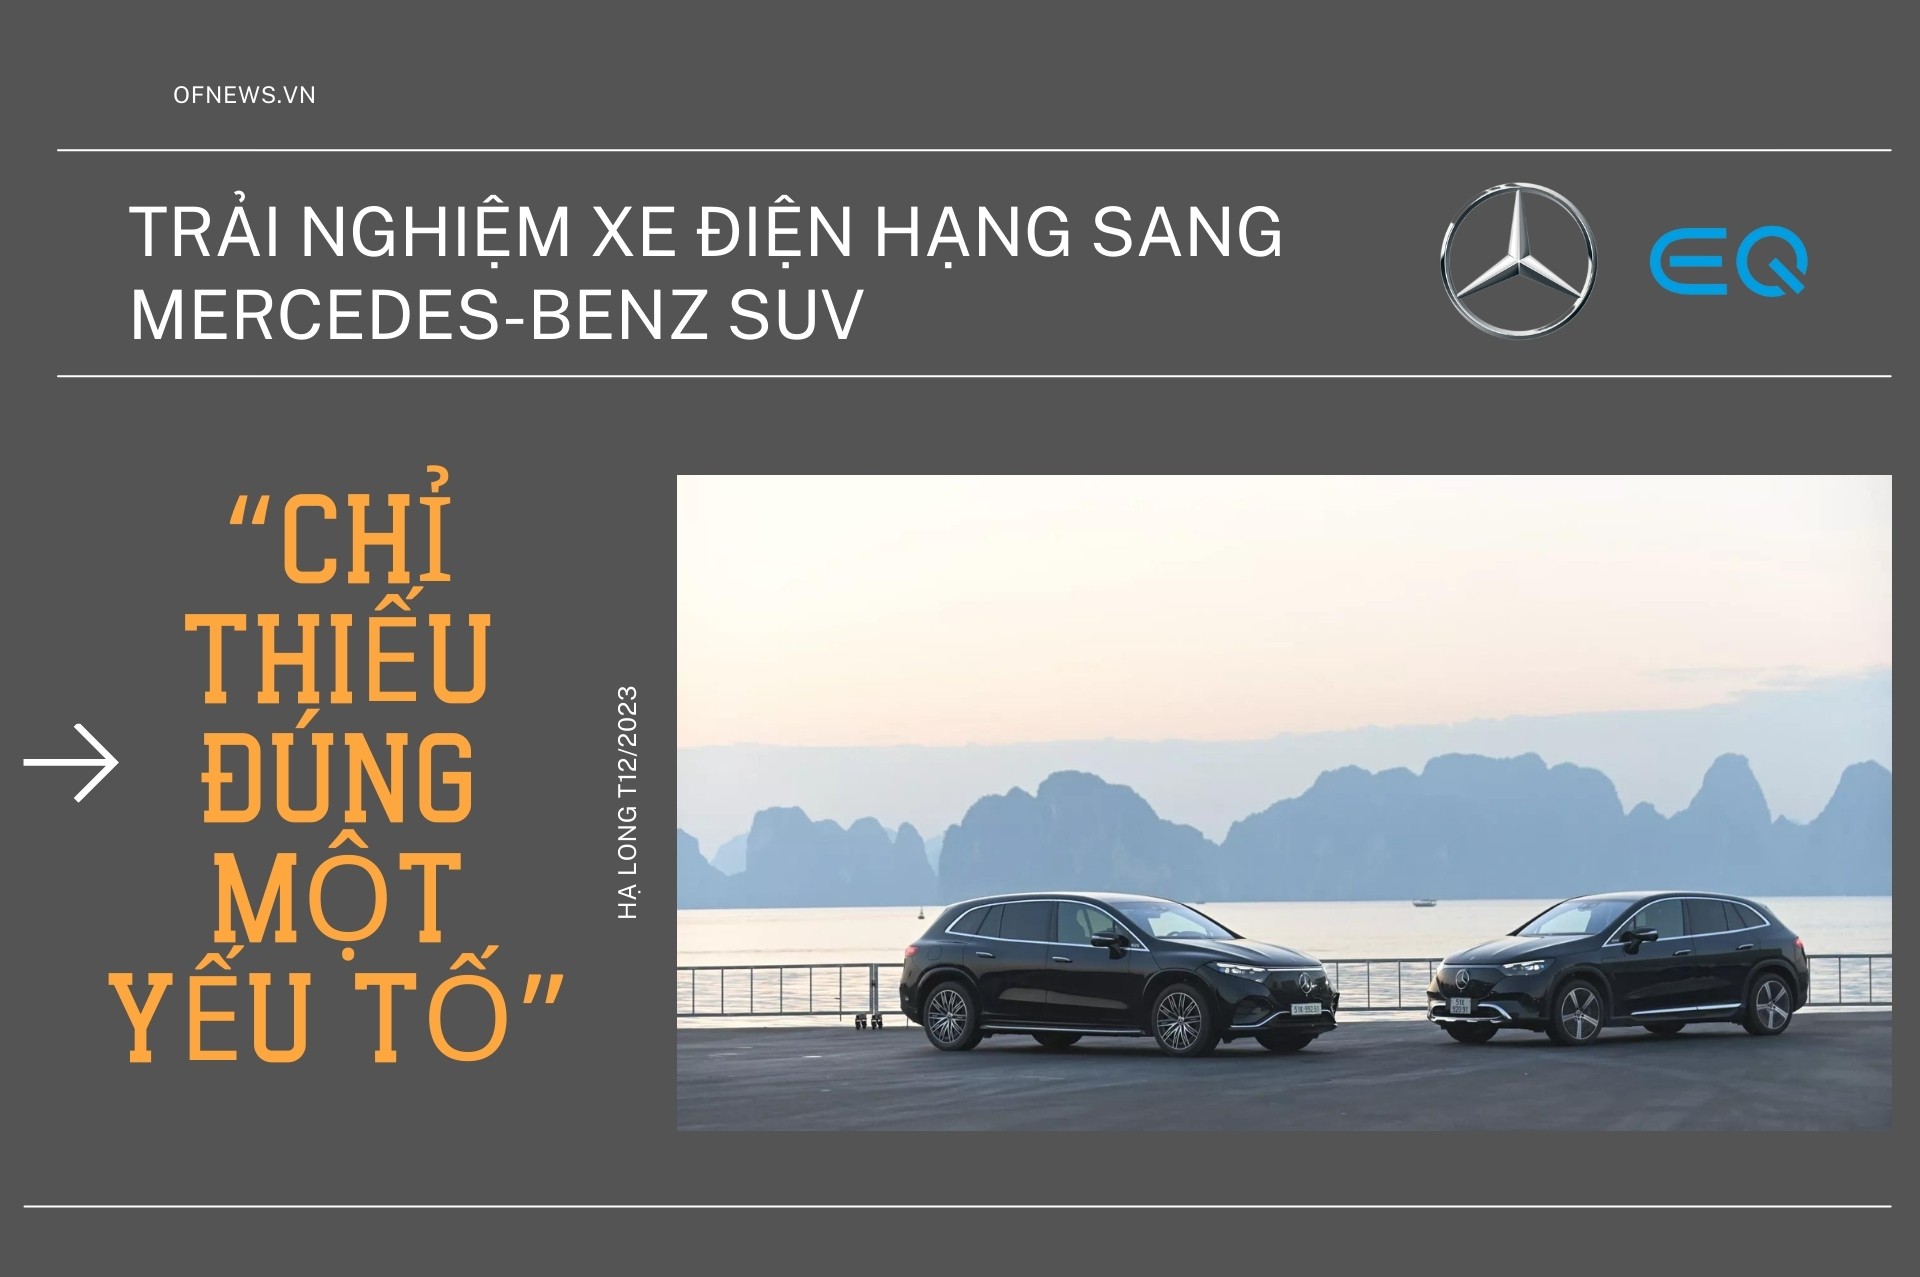 Hành trình trải nghiệm xe điện hạng sang Mercedes-Benz: Chỉ thiếu đúng một yếu tố